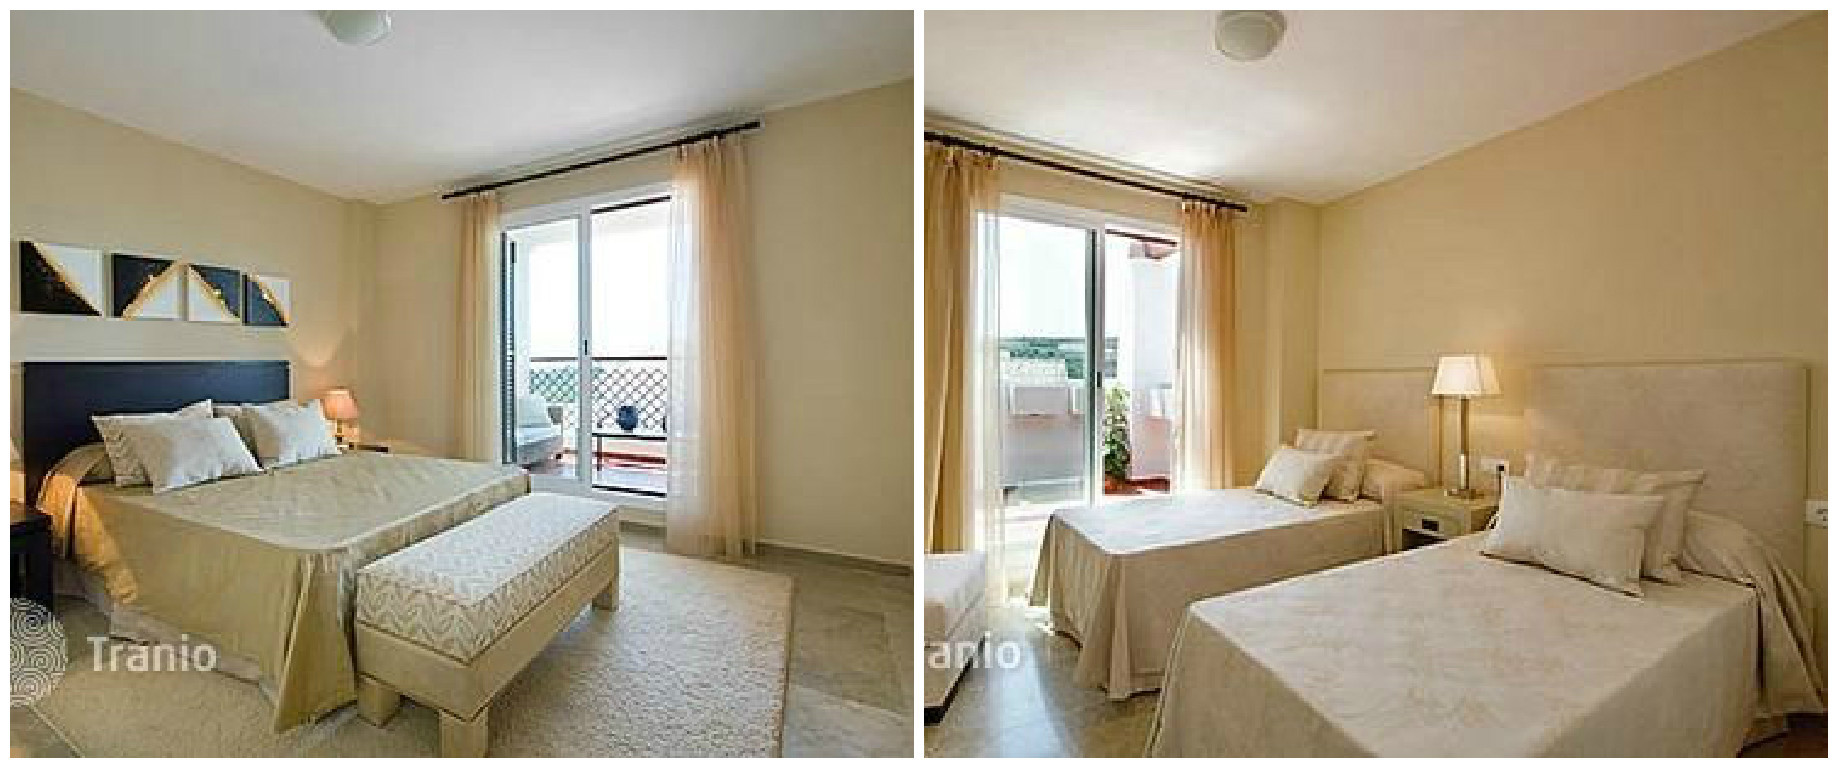 Двушка в Москве или роскошная квартира в курортном месте - цена одна! заграница, квартира, курорты, москва, недвижимость, сравнение